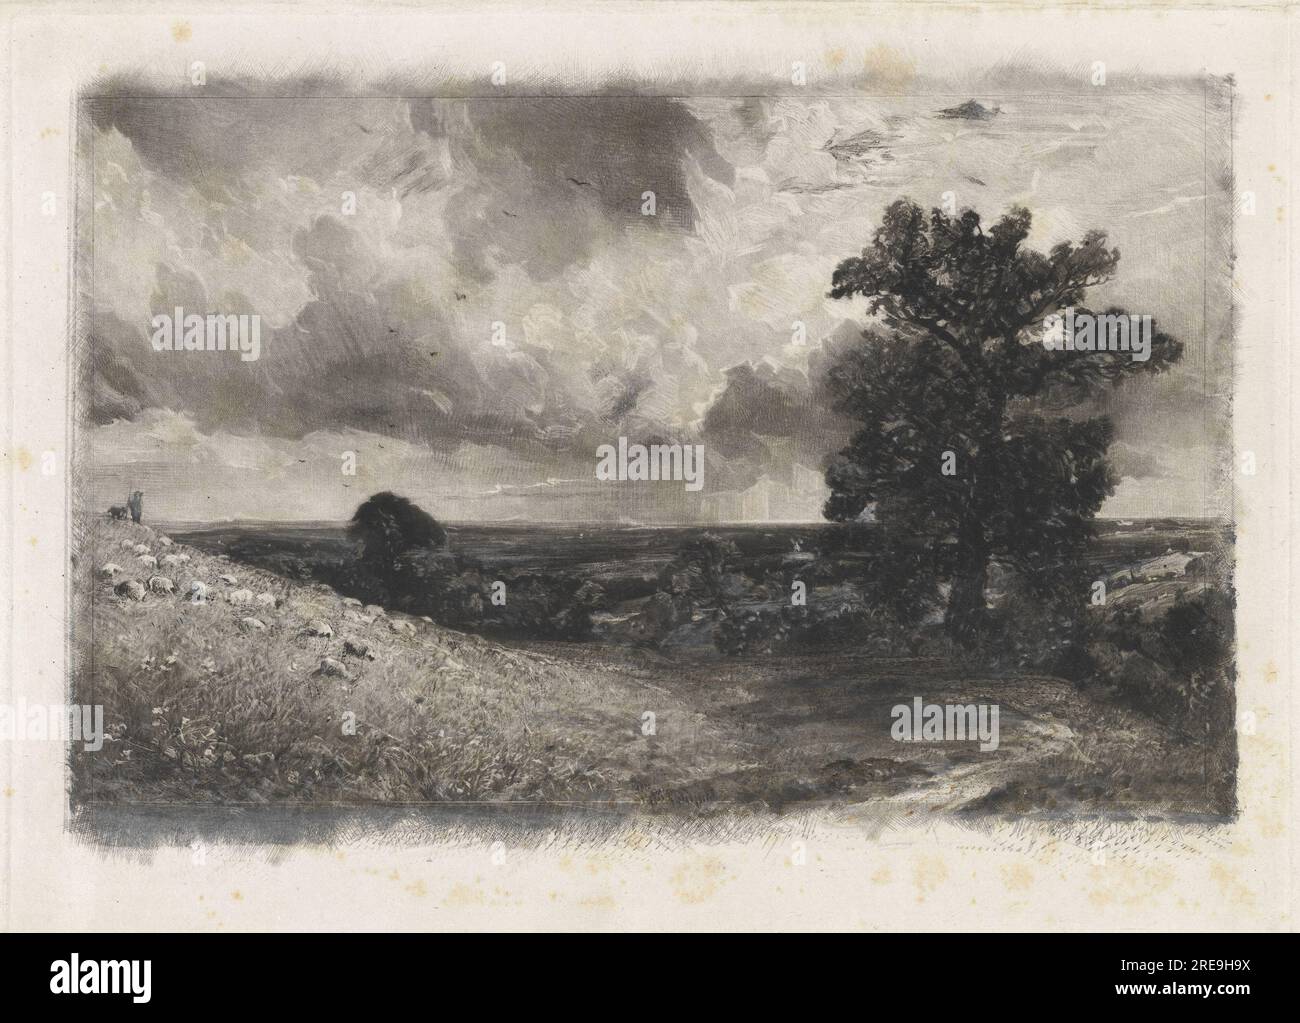 'David Lucas after John Constable, Noon, 1830, mezzotint on laid paper, plate: 18.5 x 25.5 cm (7 5/16 x 10 1/16 in.) sheet: 19.5 x 30.6 cm (7 11/16 x 12 1/16 in.), Paul Mellon Fund, 2001.118.23' Stock Photo